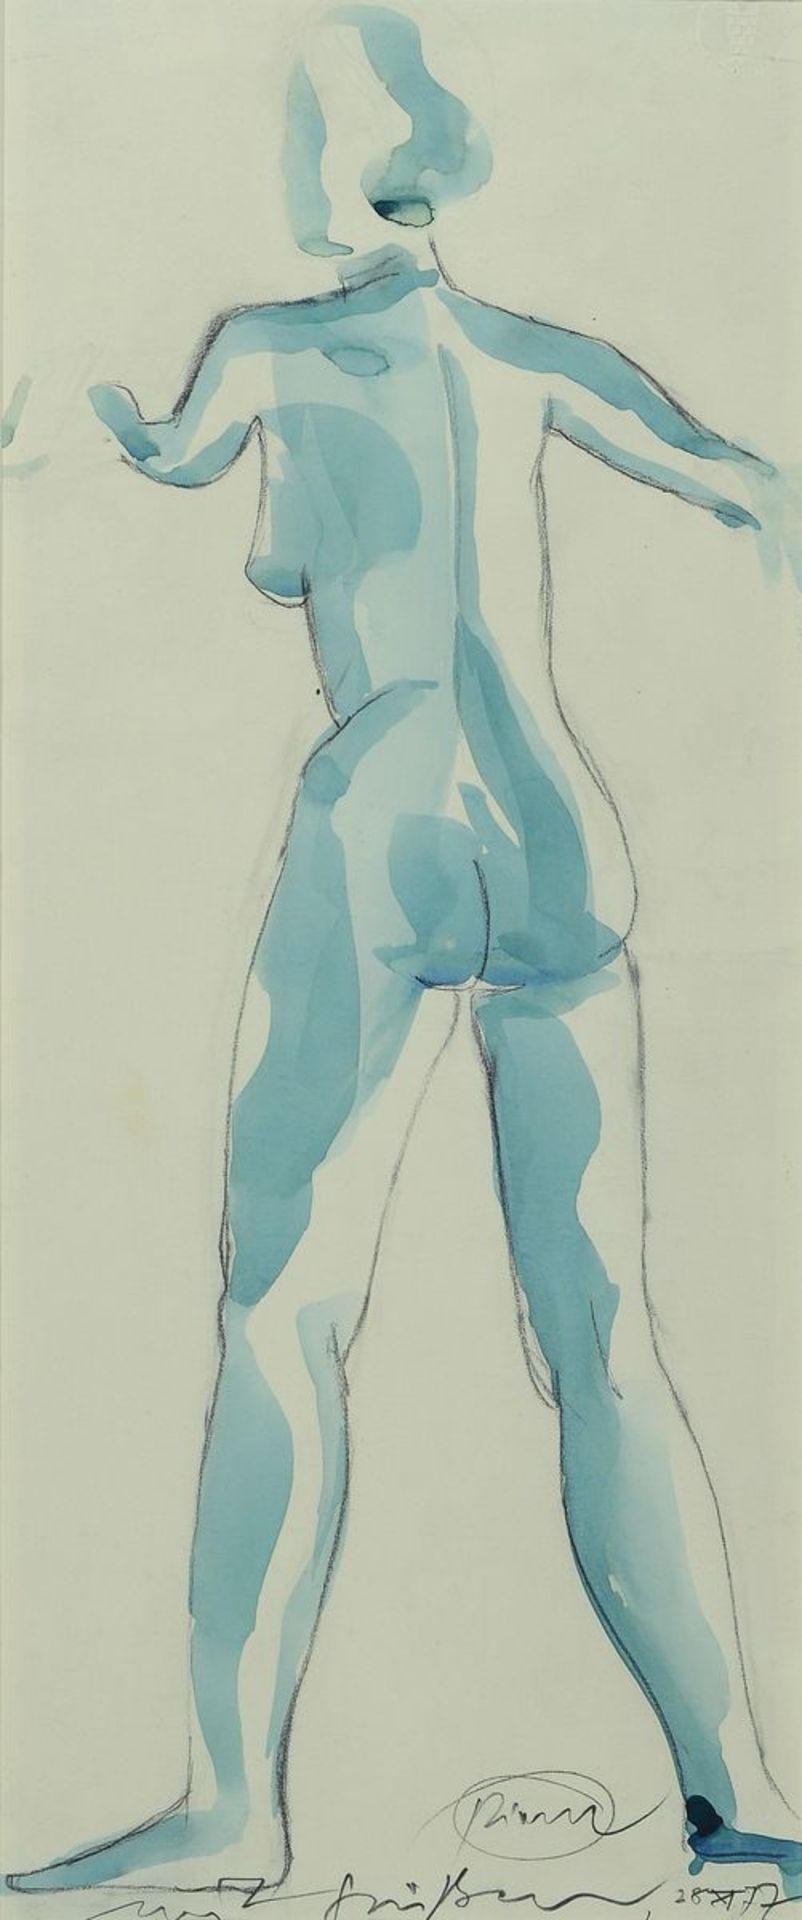 Otto Piene 1928-2014, weiblicher Rückenakt, Aquarell über Bleistift,signiert, mit Widmung: "mit